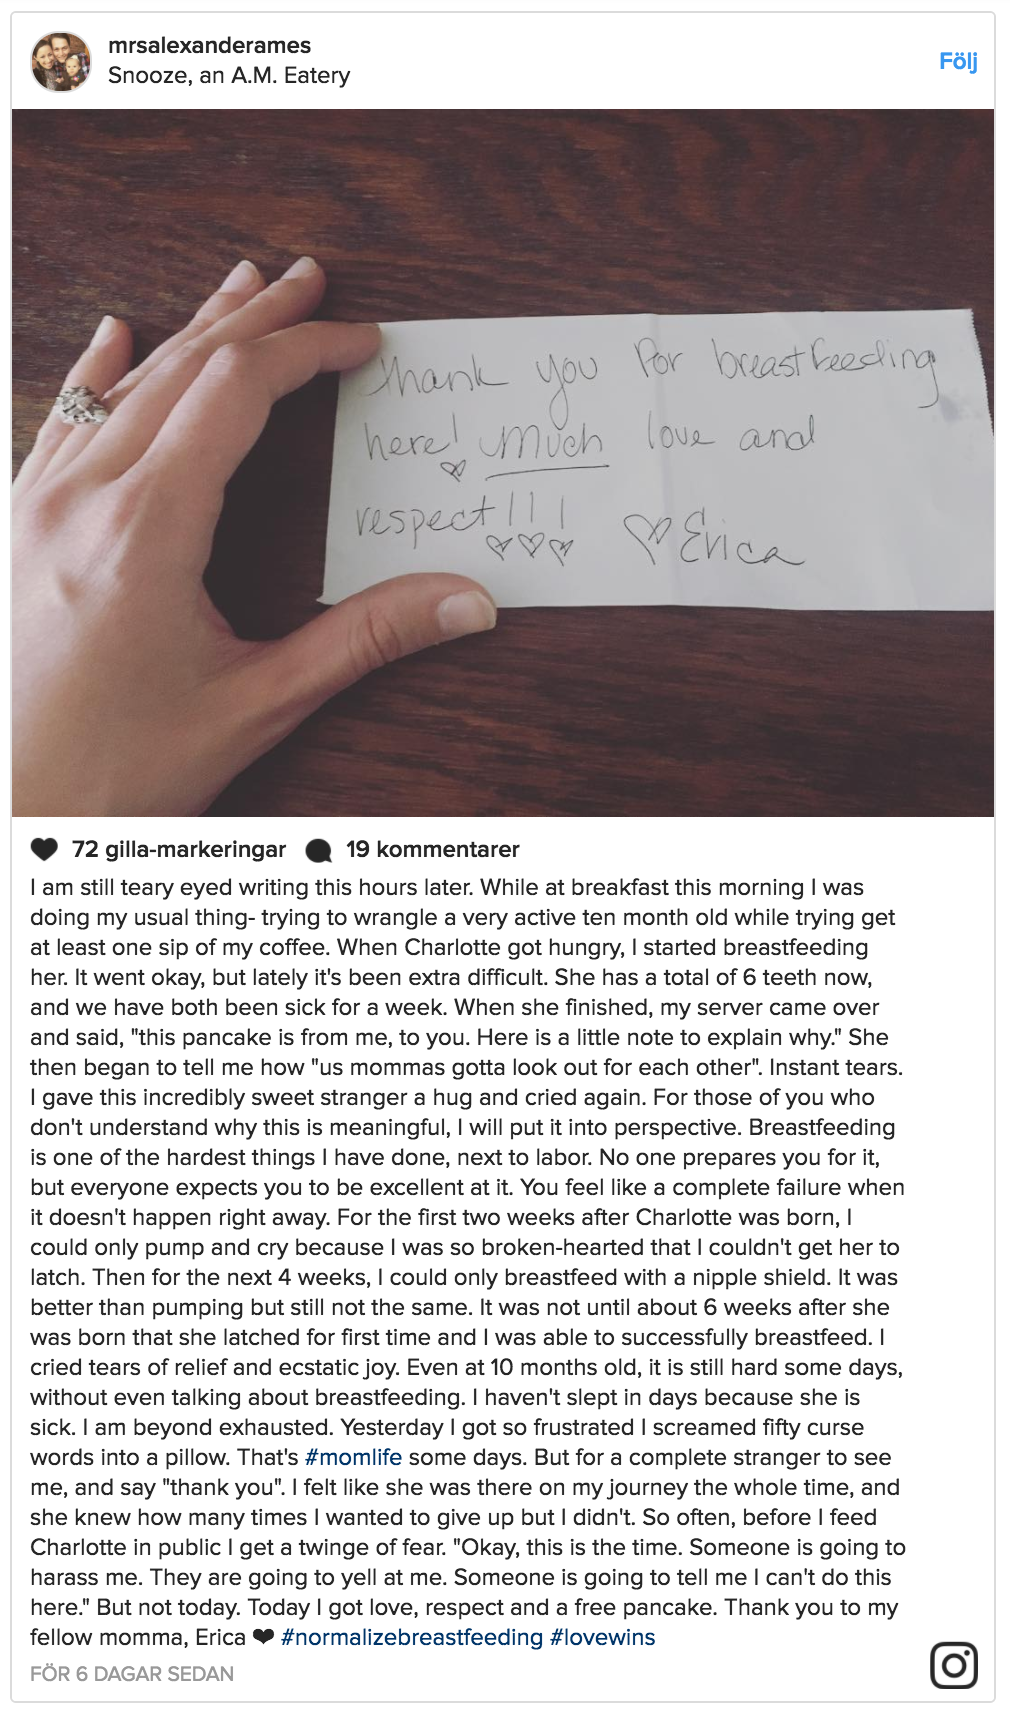 Isabelle skrev ett Instagram-inlägg om händelsen.